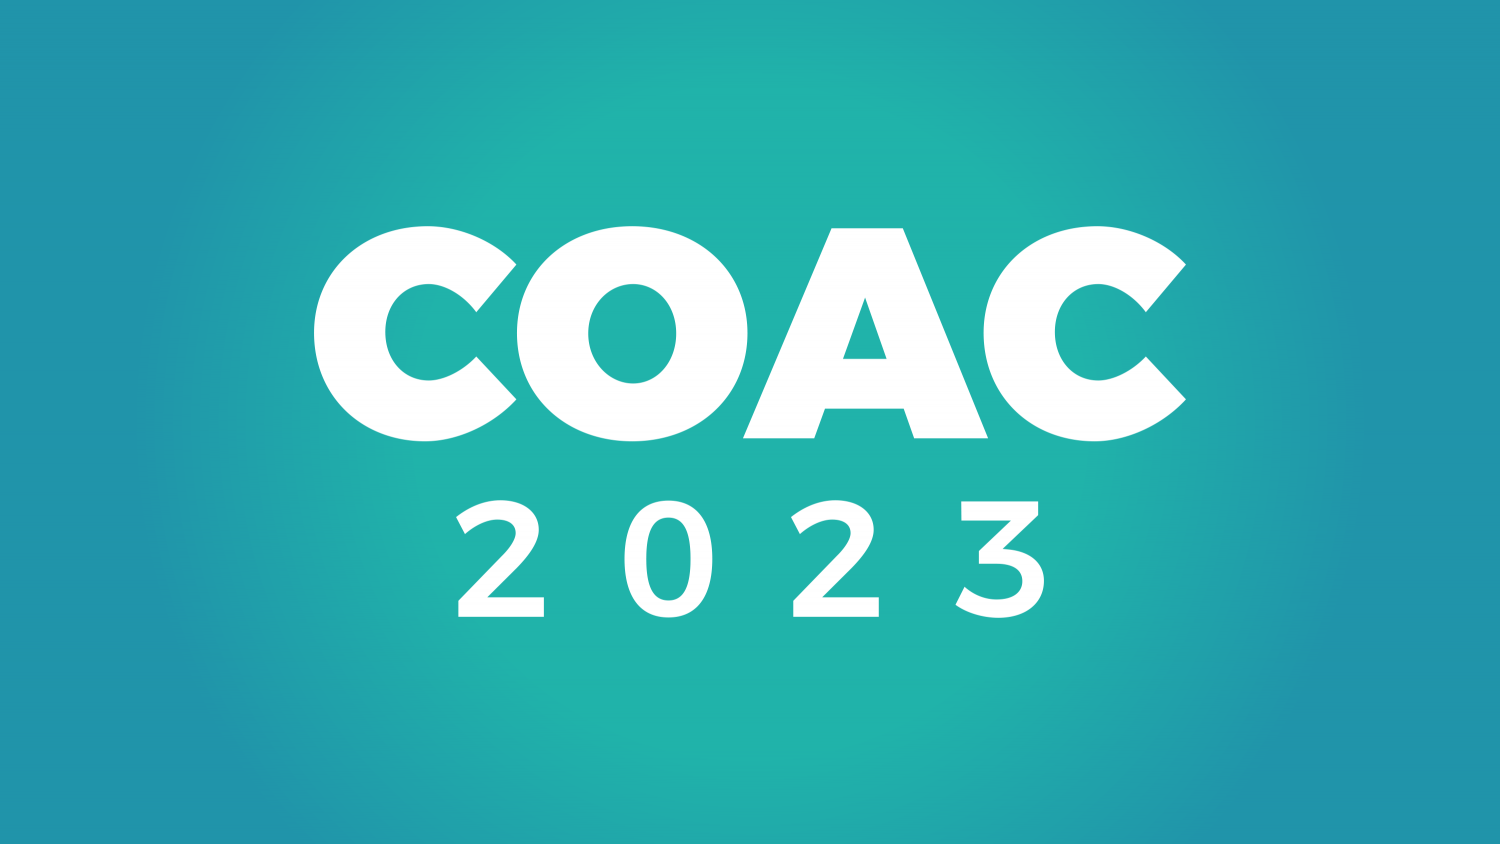 COAC 2023